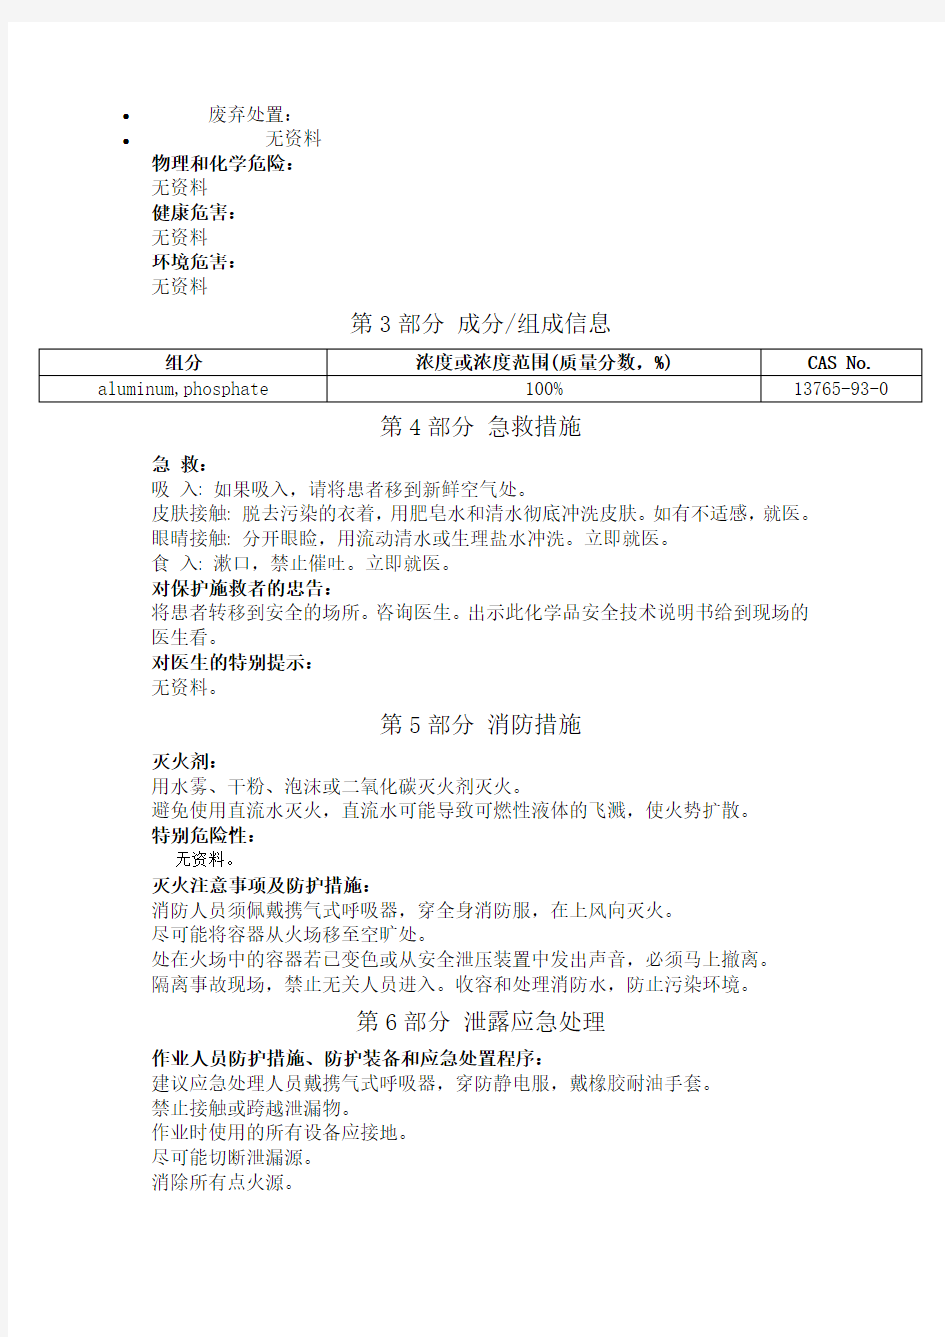 磷酸铝安全技术说明书中文